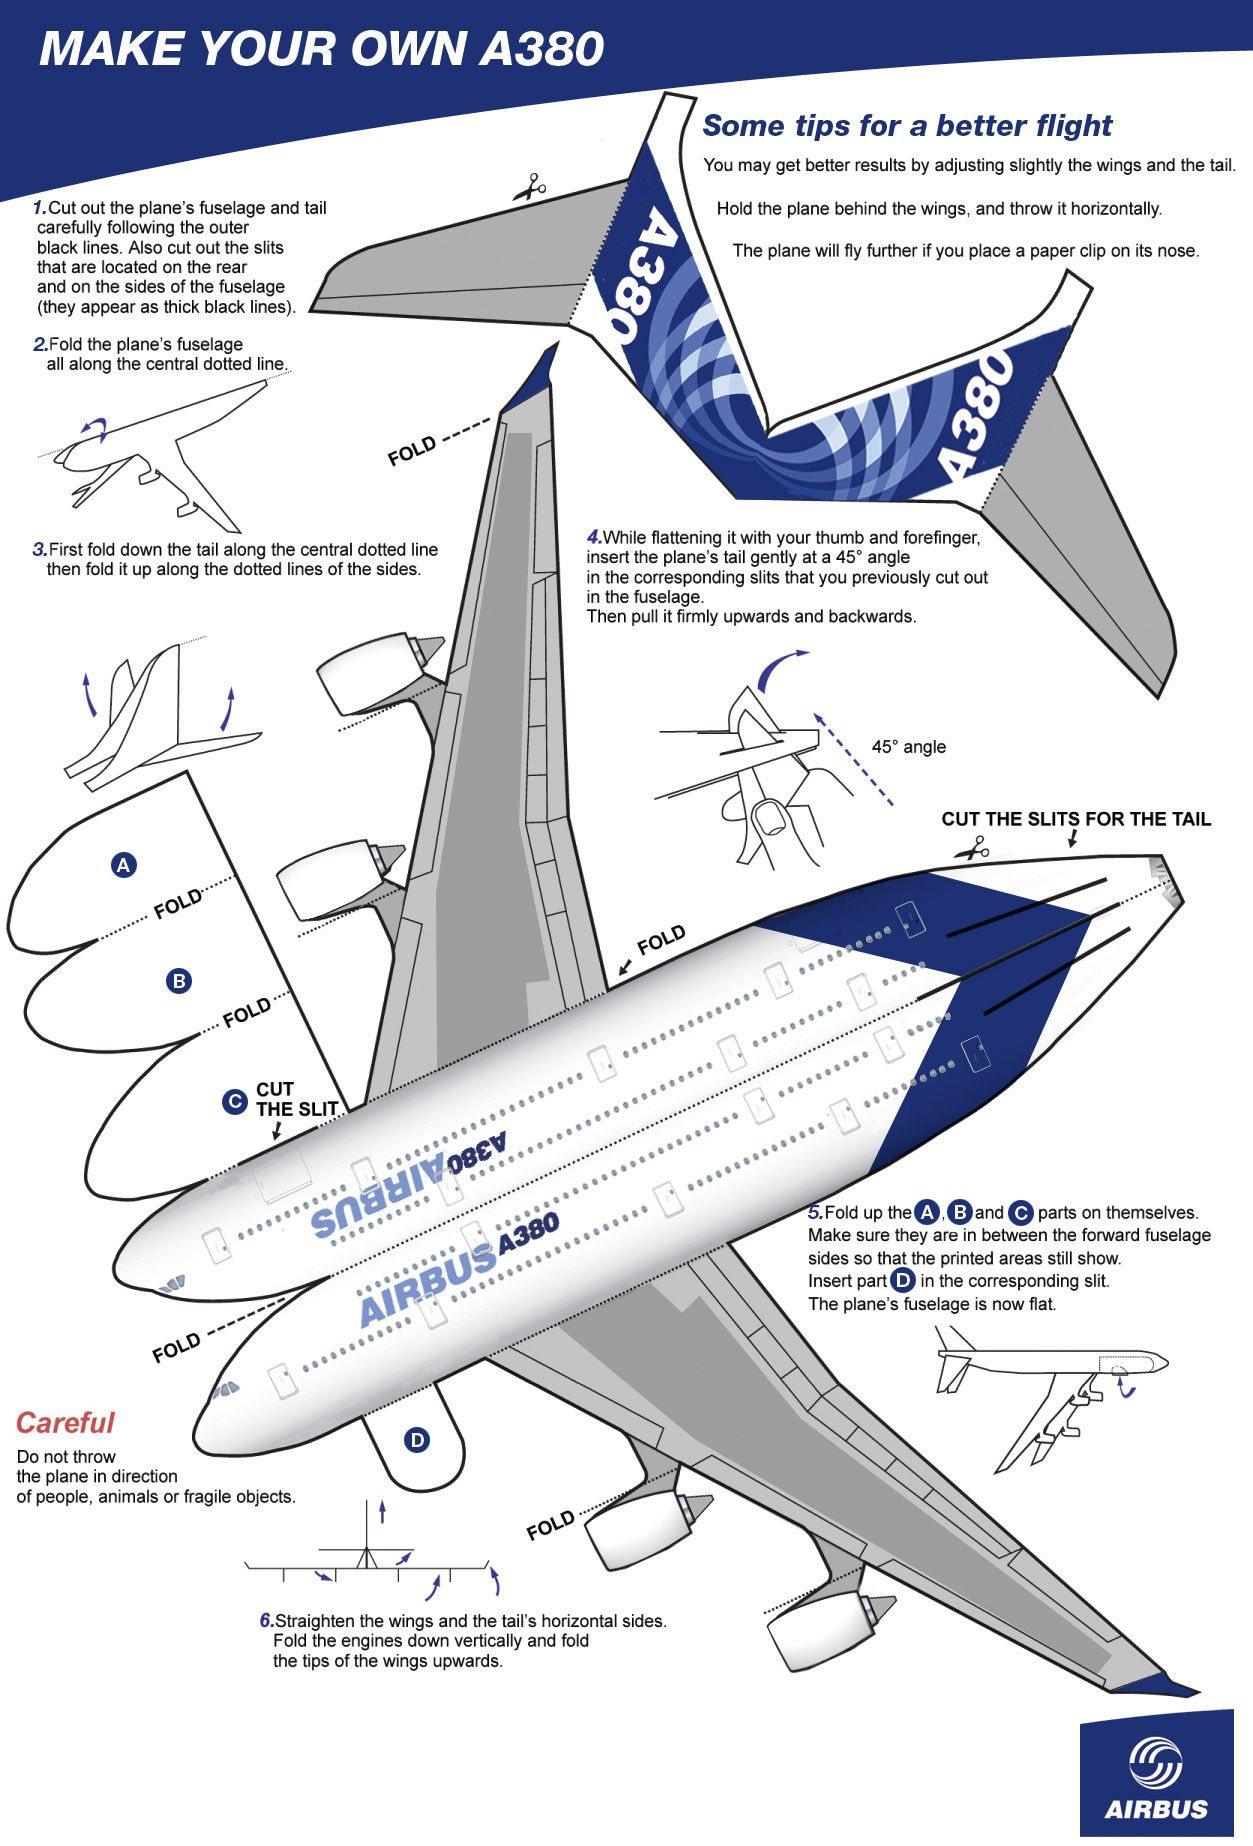 A380 airbuscolours Artesan as De Avi n Aviones De Papel Modelos De 